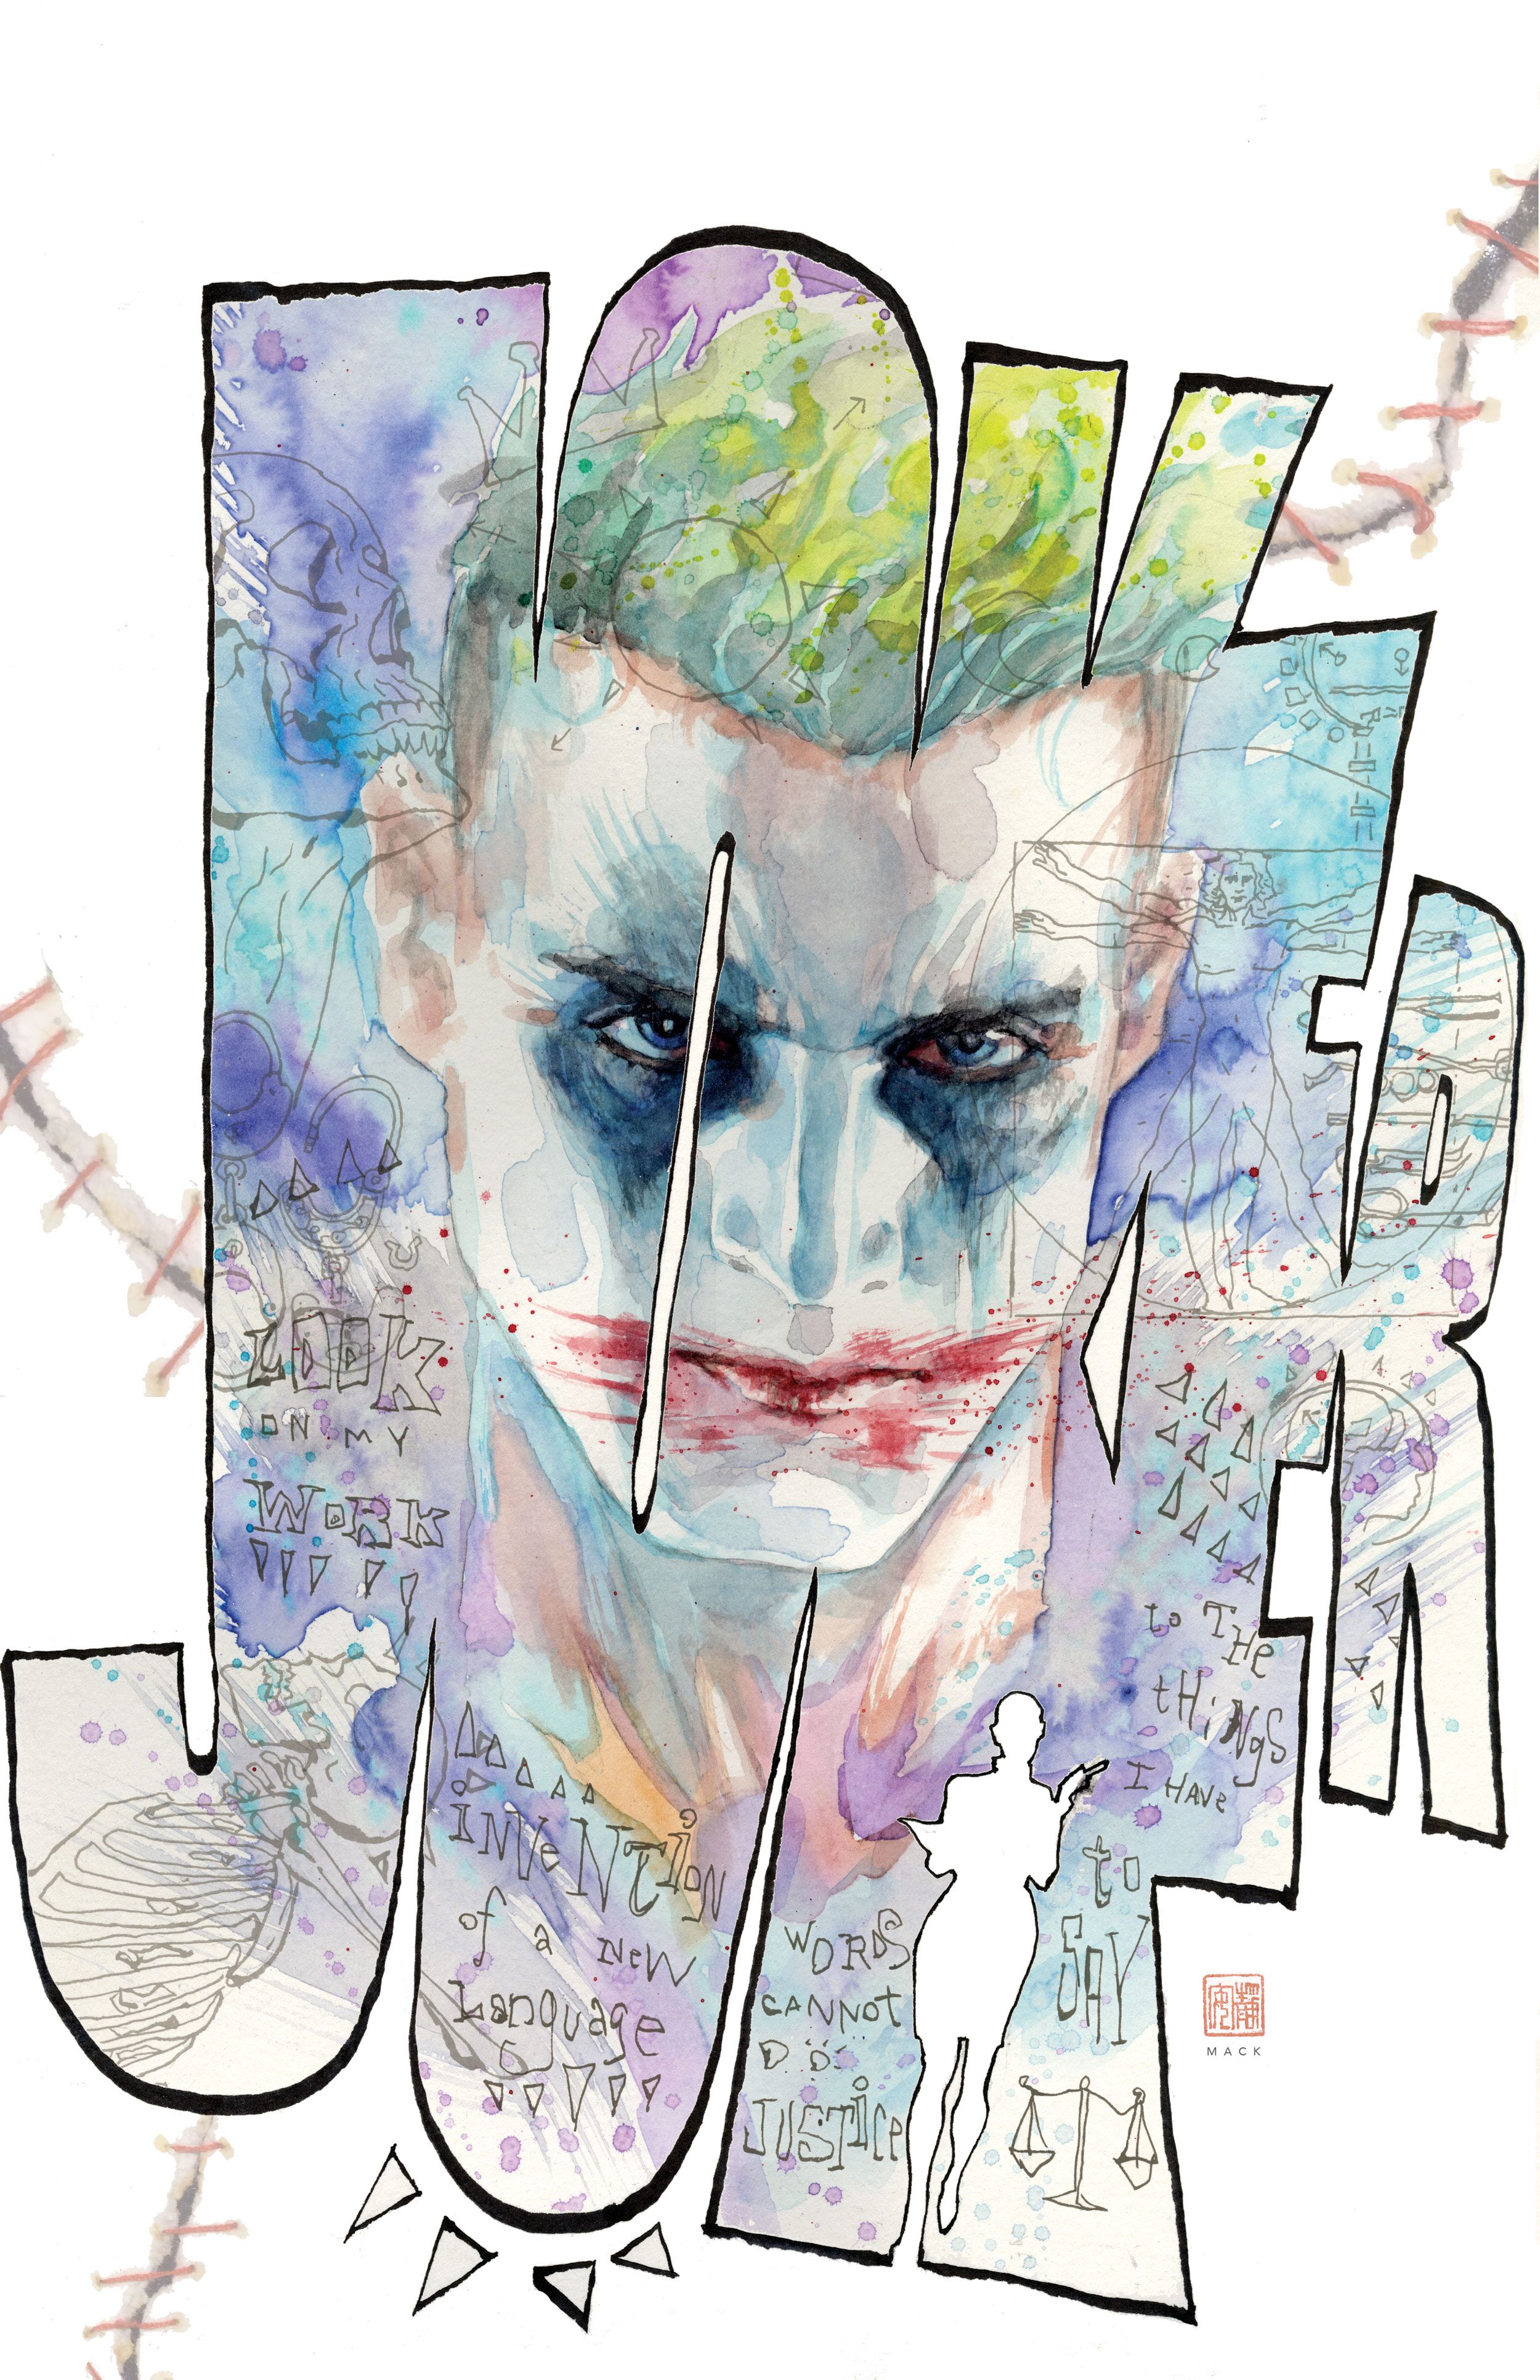 Joker Criminal Sanity